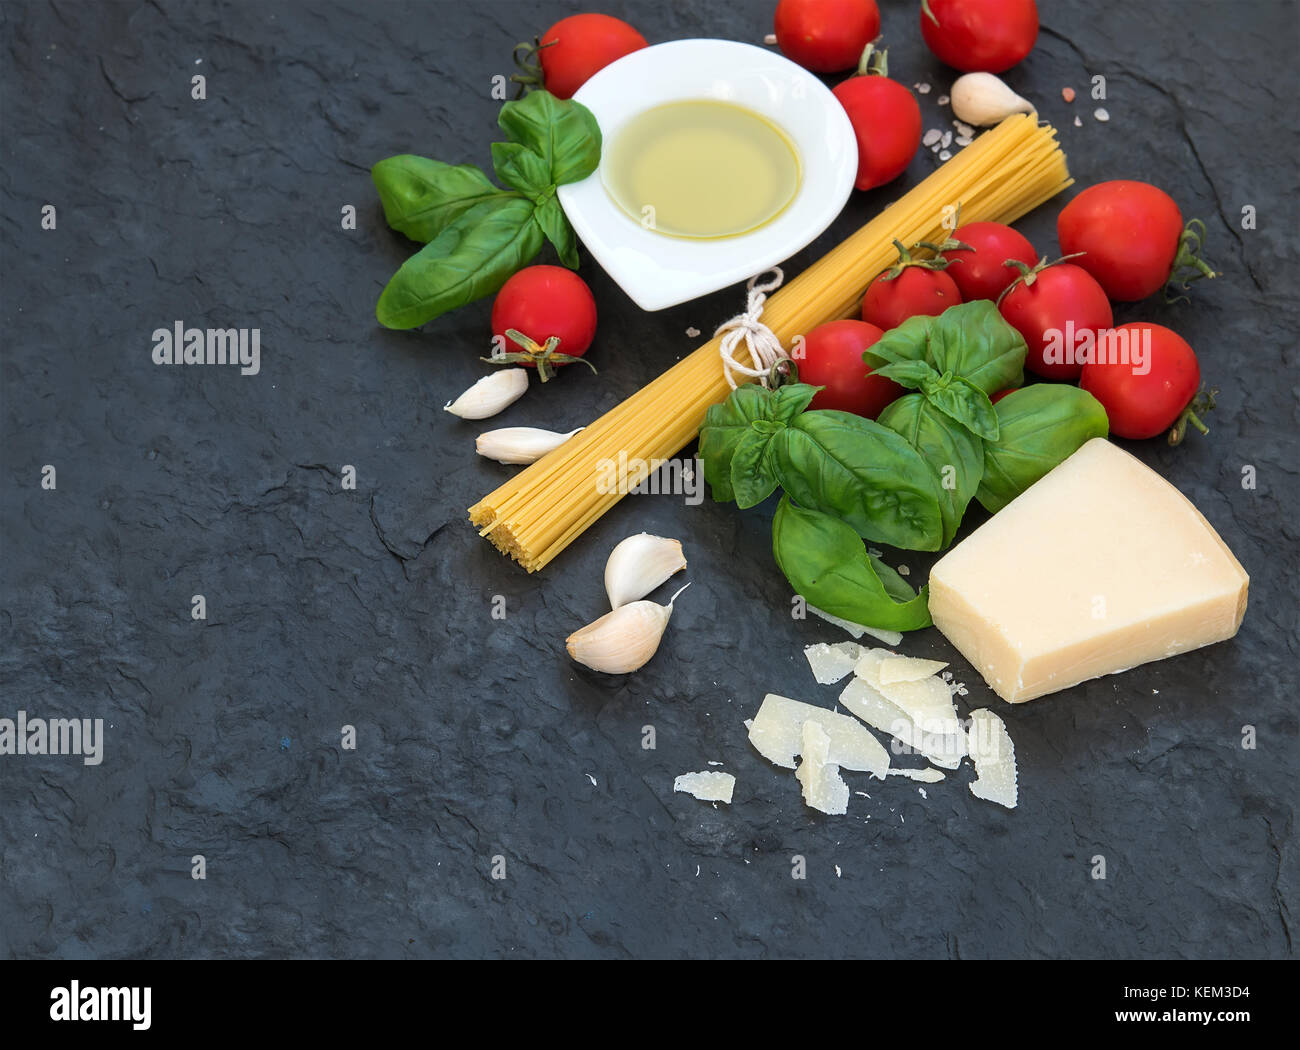 Zutaten zum Kochen Pasta Spaghetti, Olivenöl, Knoblauch, Parmesan, Tomaten und frischem Basilikum auf schwarzem Schiefer Hintergrund, Ansicht von oben, kopieren Raum Stockfoto